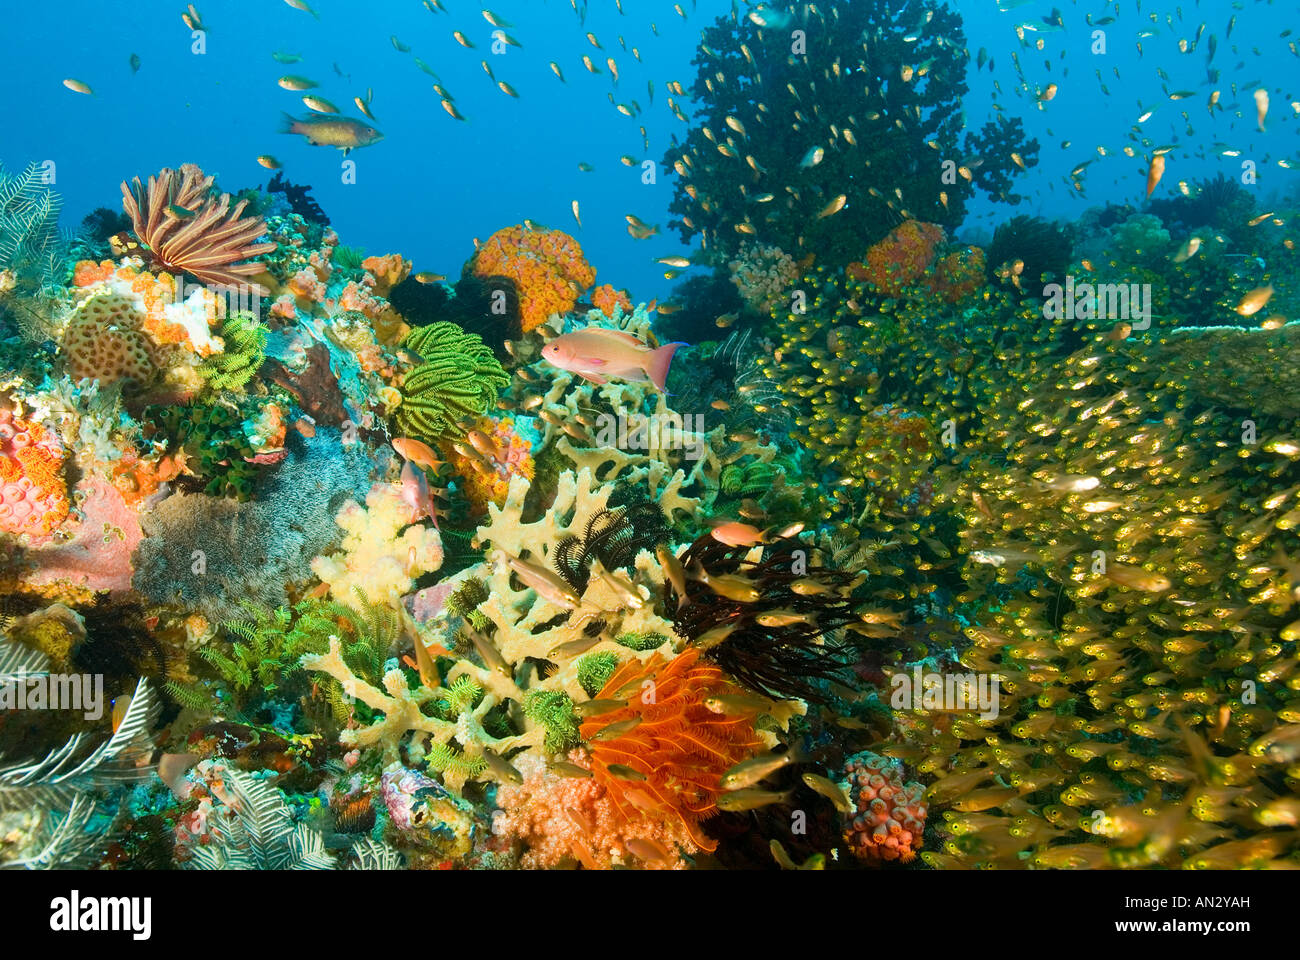 Reef scenic con la increíble diversidad de corales, invertebrados y peces del Parque Nacional de Komodo en Indonesia Foto de stock